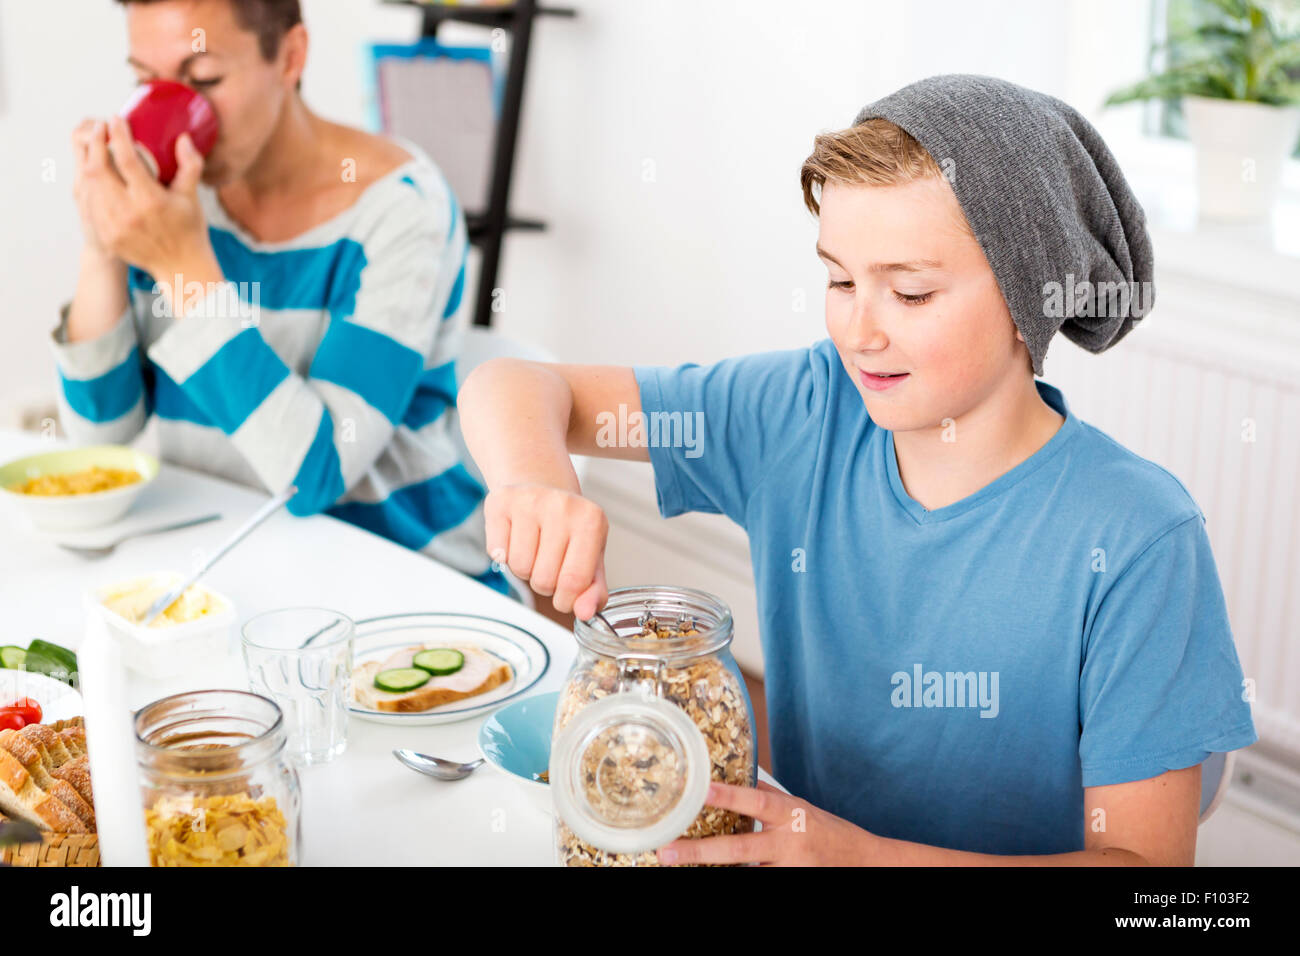 Madre e hijo desayunando acompañada por la mañana. Hijo servir cereales de una botella en la mesa del desayuno. Foto de stock